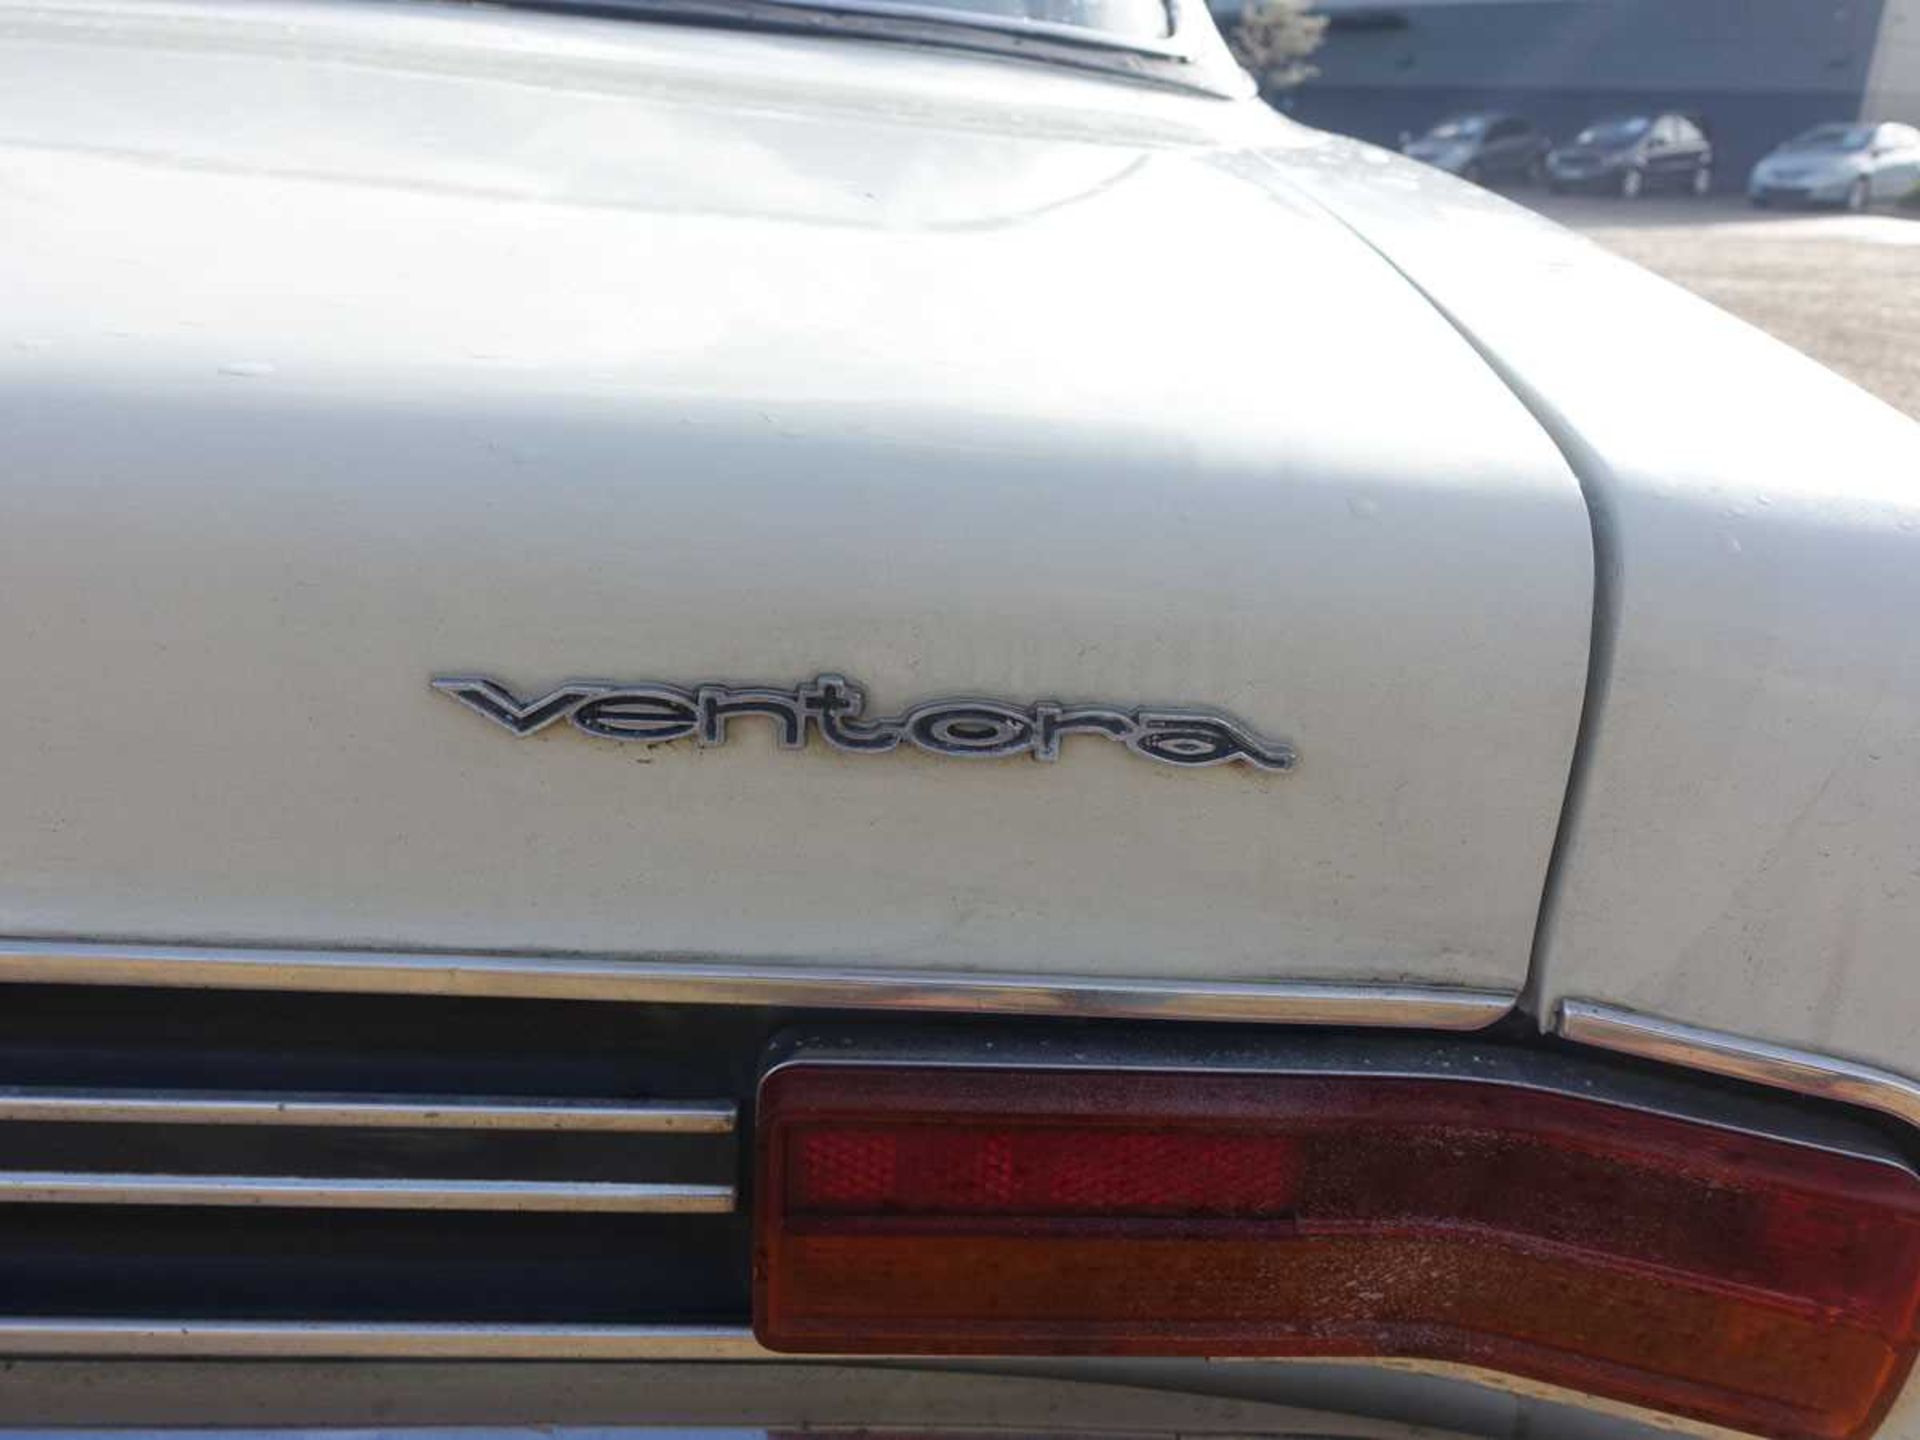 1968 Vauxhall Ventora FD 4-door saloon - Image 16 of 23